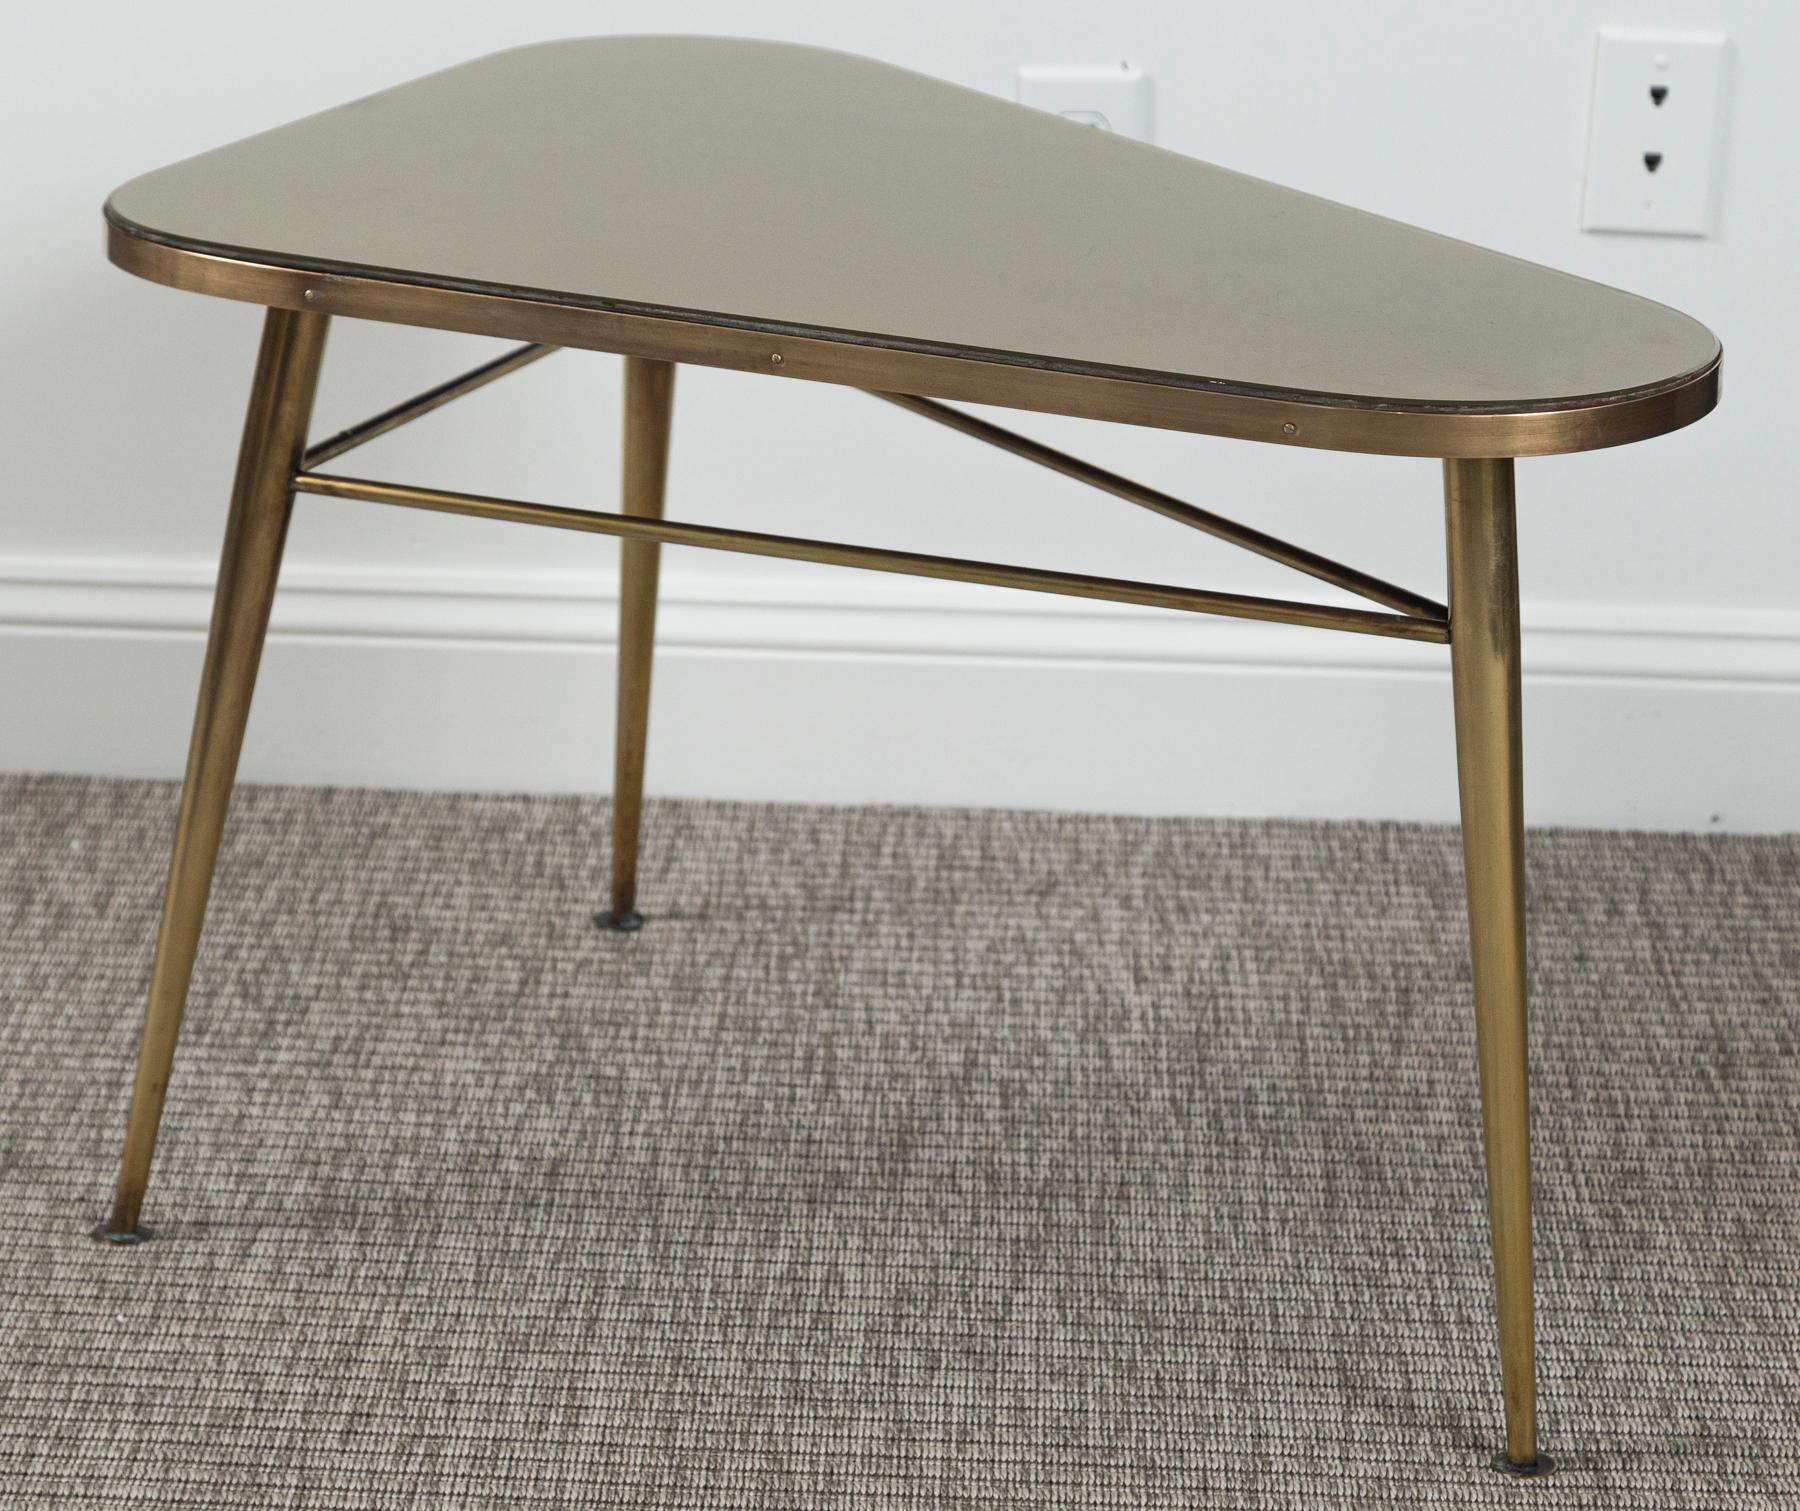 Wunderschöner italienischer Design Tisch mit abgerundeter rechteckiger Form aus massivem unlackiertem Messing.  Der Tisch wird mit seinem originalen goldfarbenen Einsatz gezeigt  Glasplatte,. Messing Tisch ist mit Bahren auf drei verjüngten und